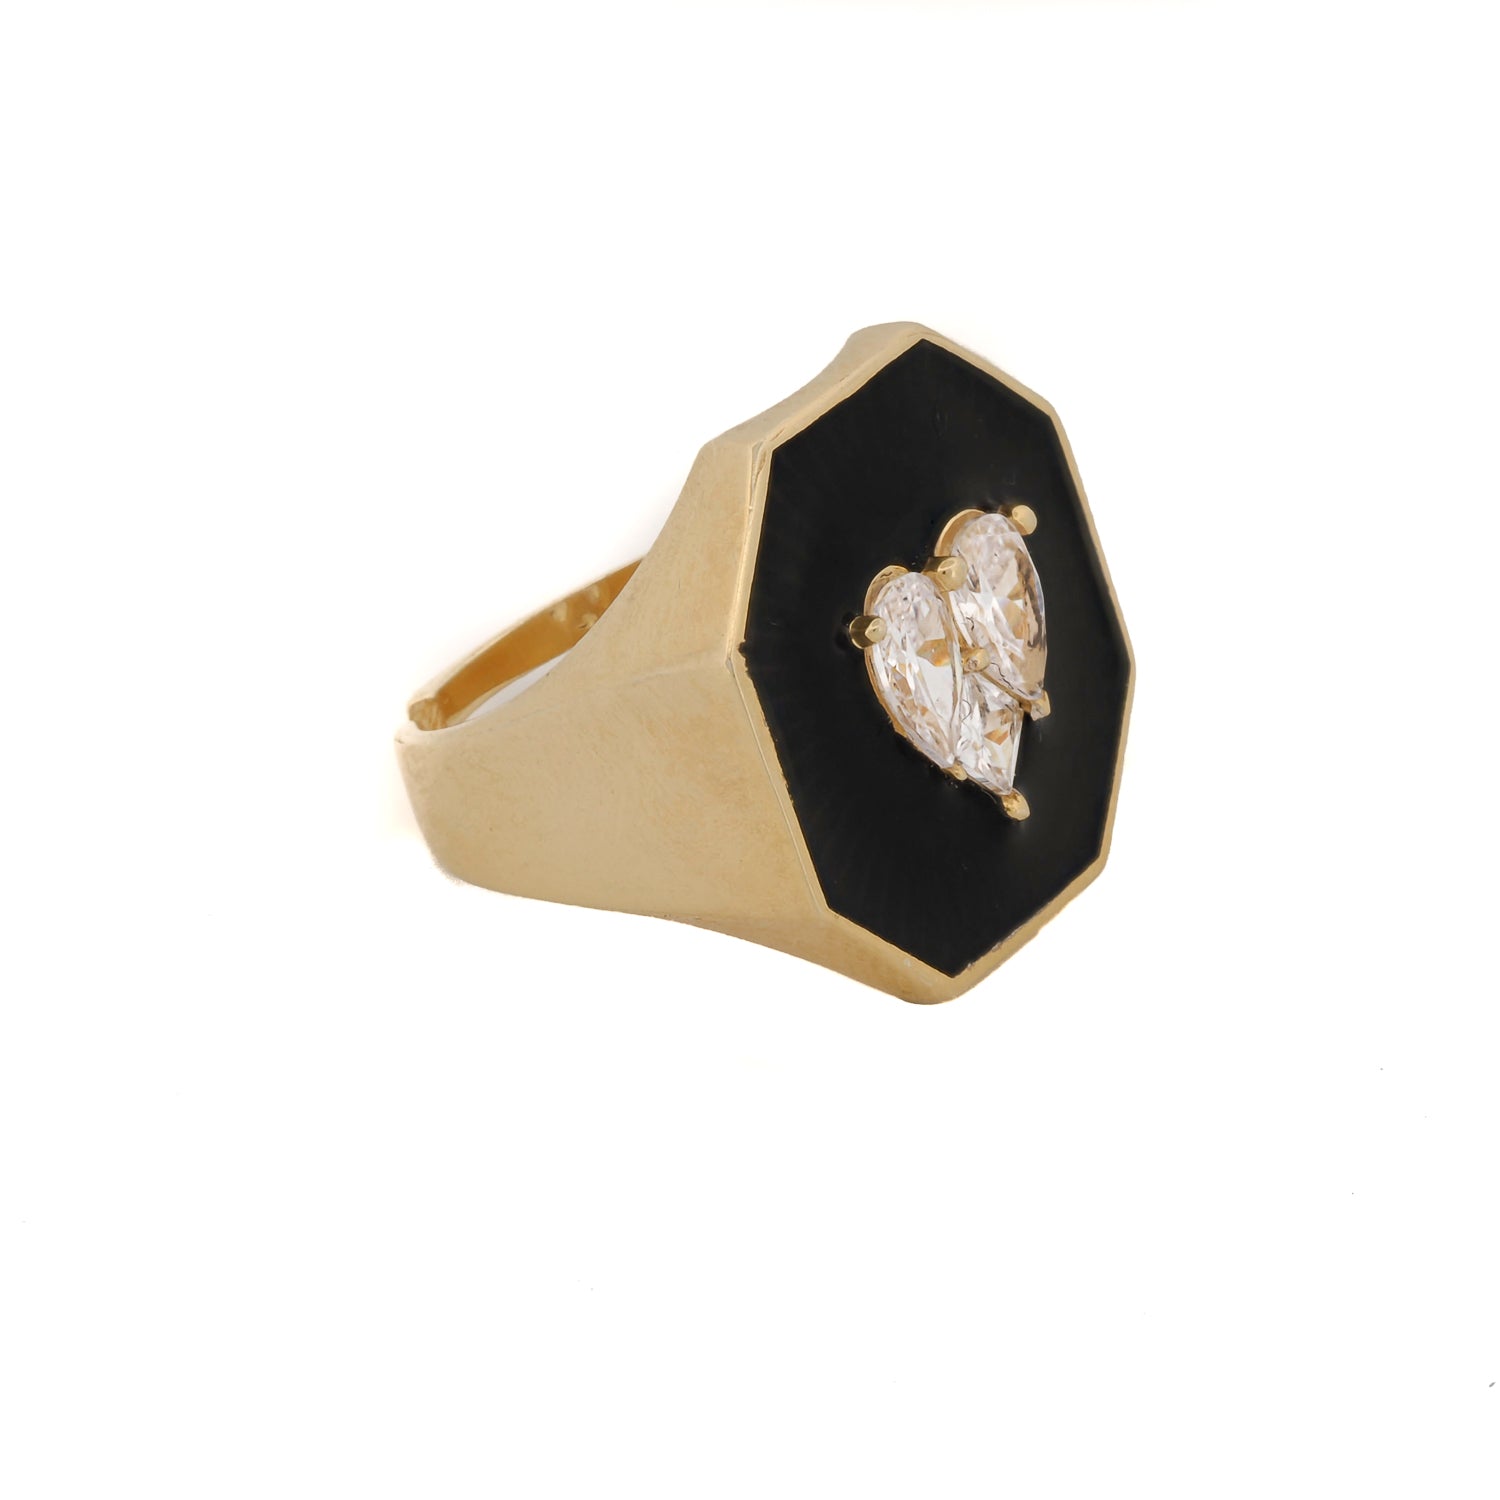 Stunning Elegance: Black Enamel Diamond Gold Ring for Valentine's